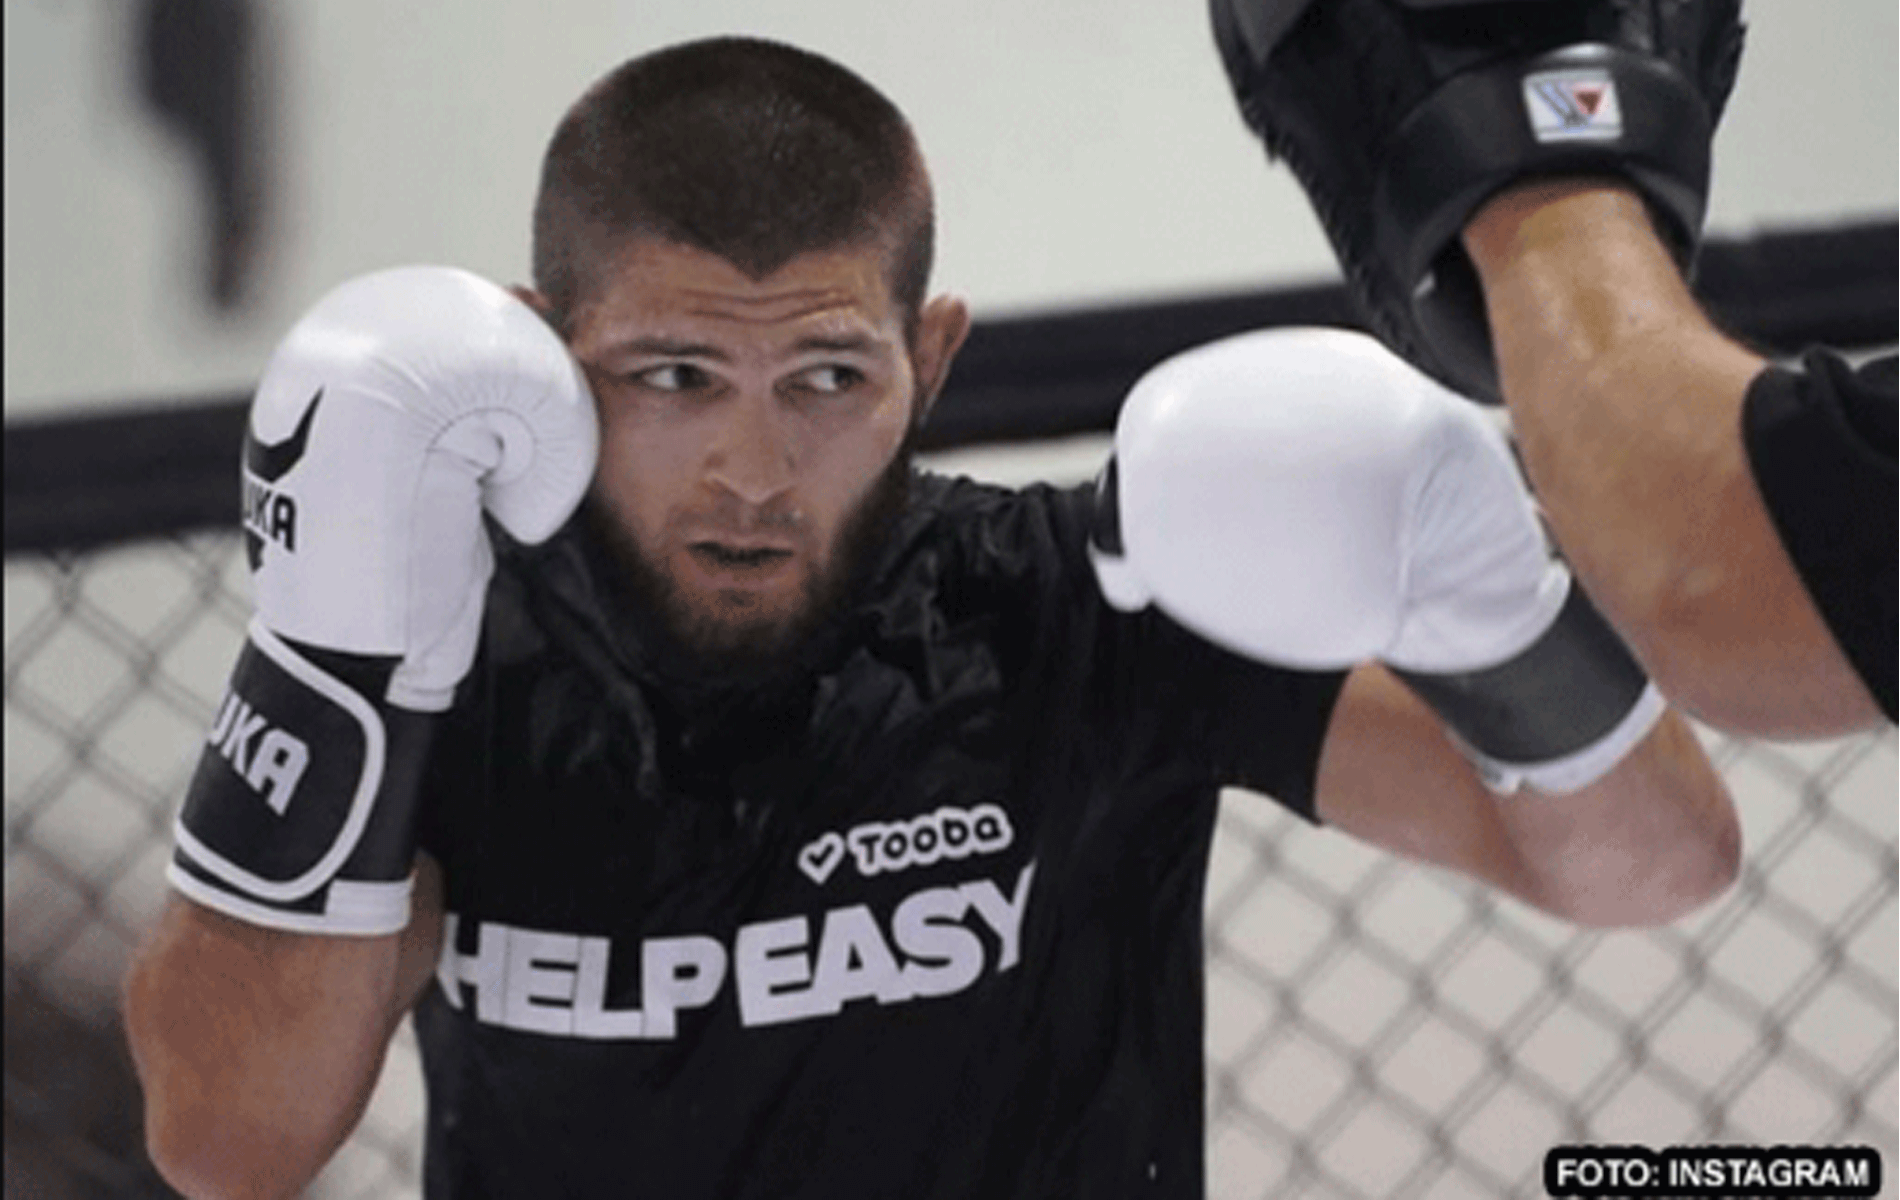 'Moeilijk om hem te haten!' Fans reageren op video UFC-ster Khabib Nurmagomedov